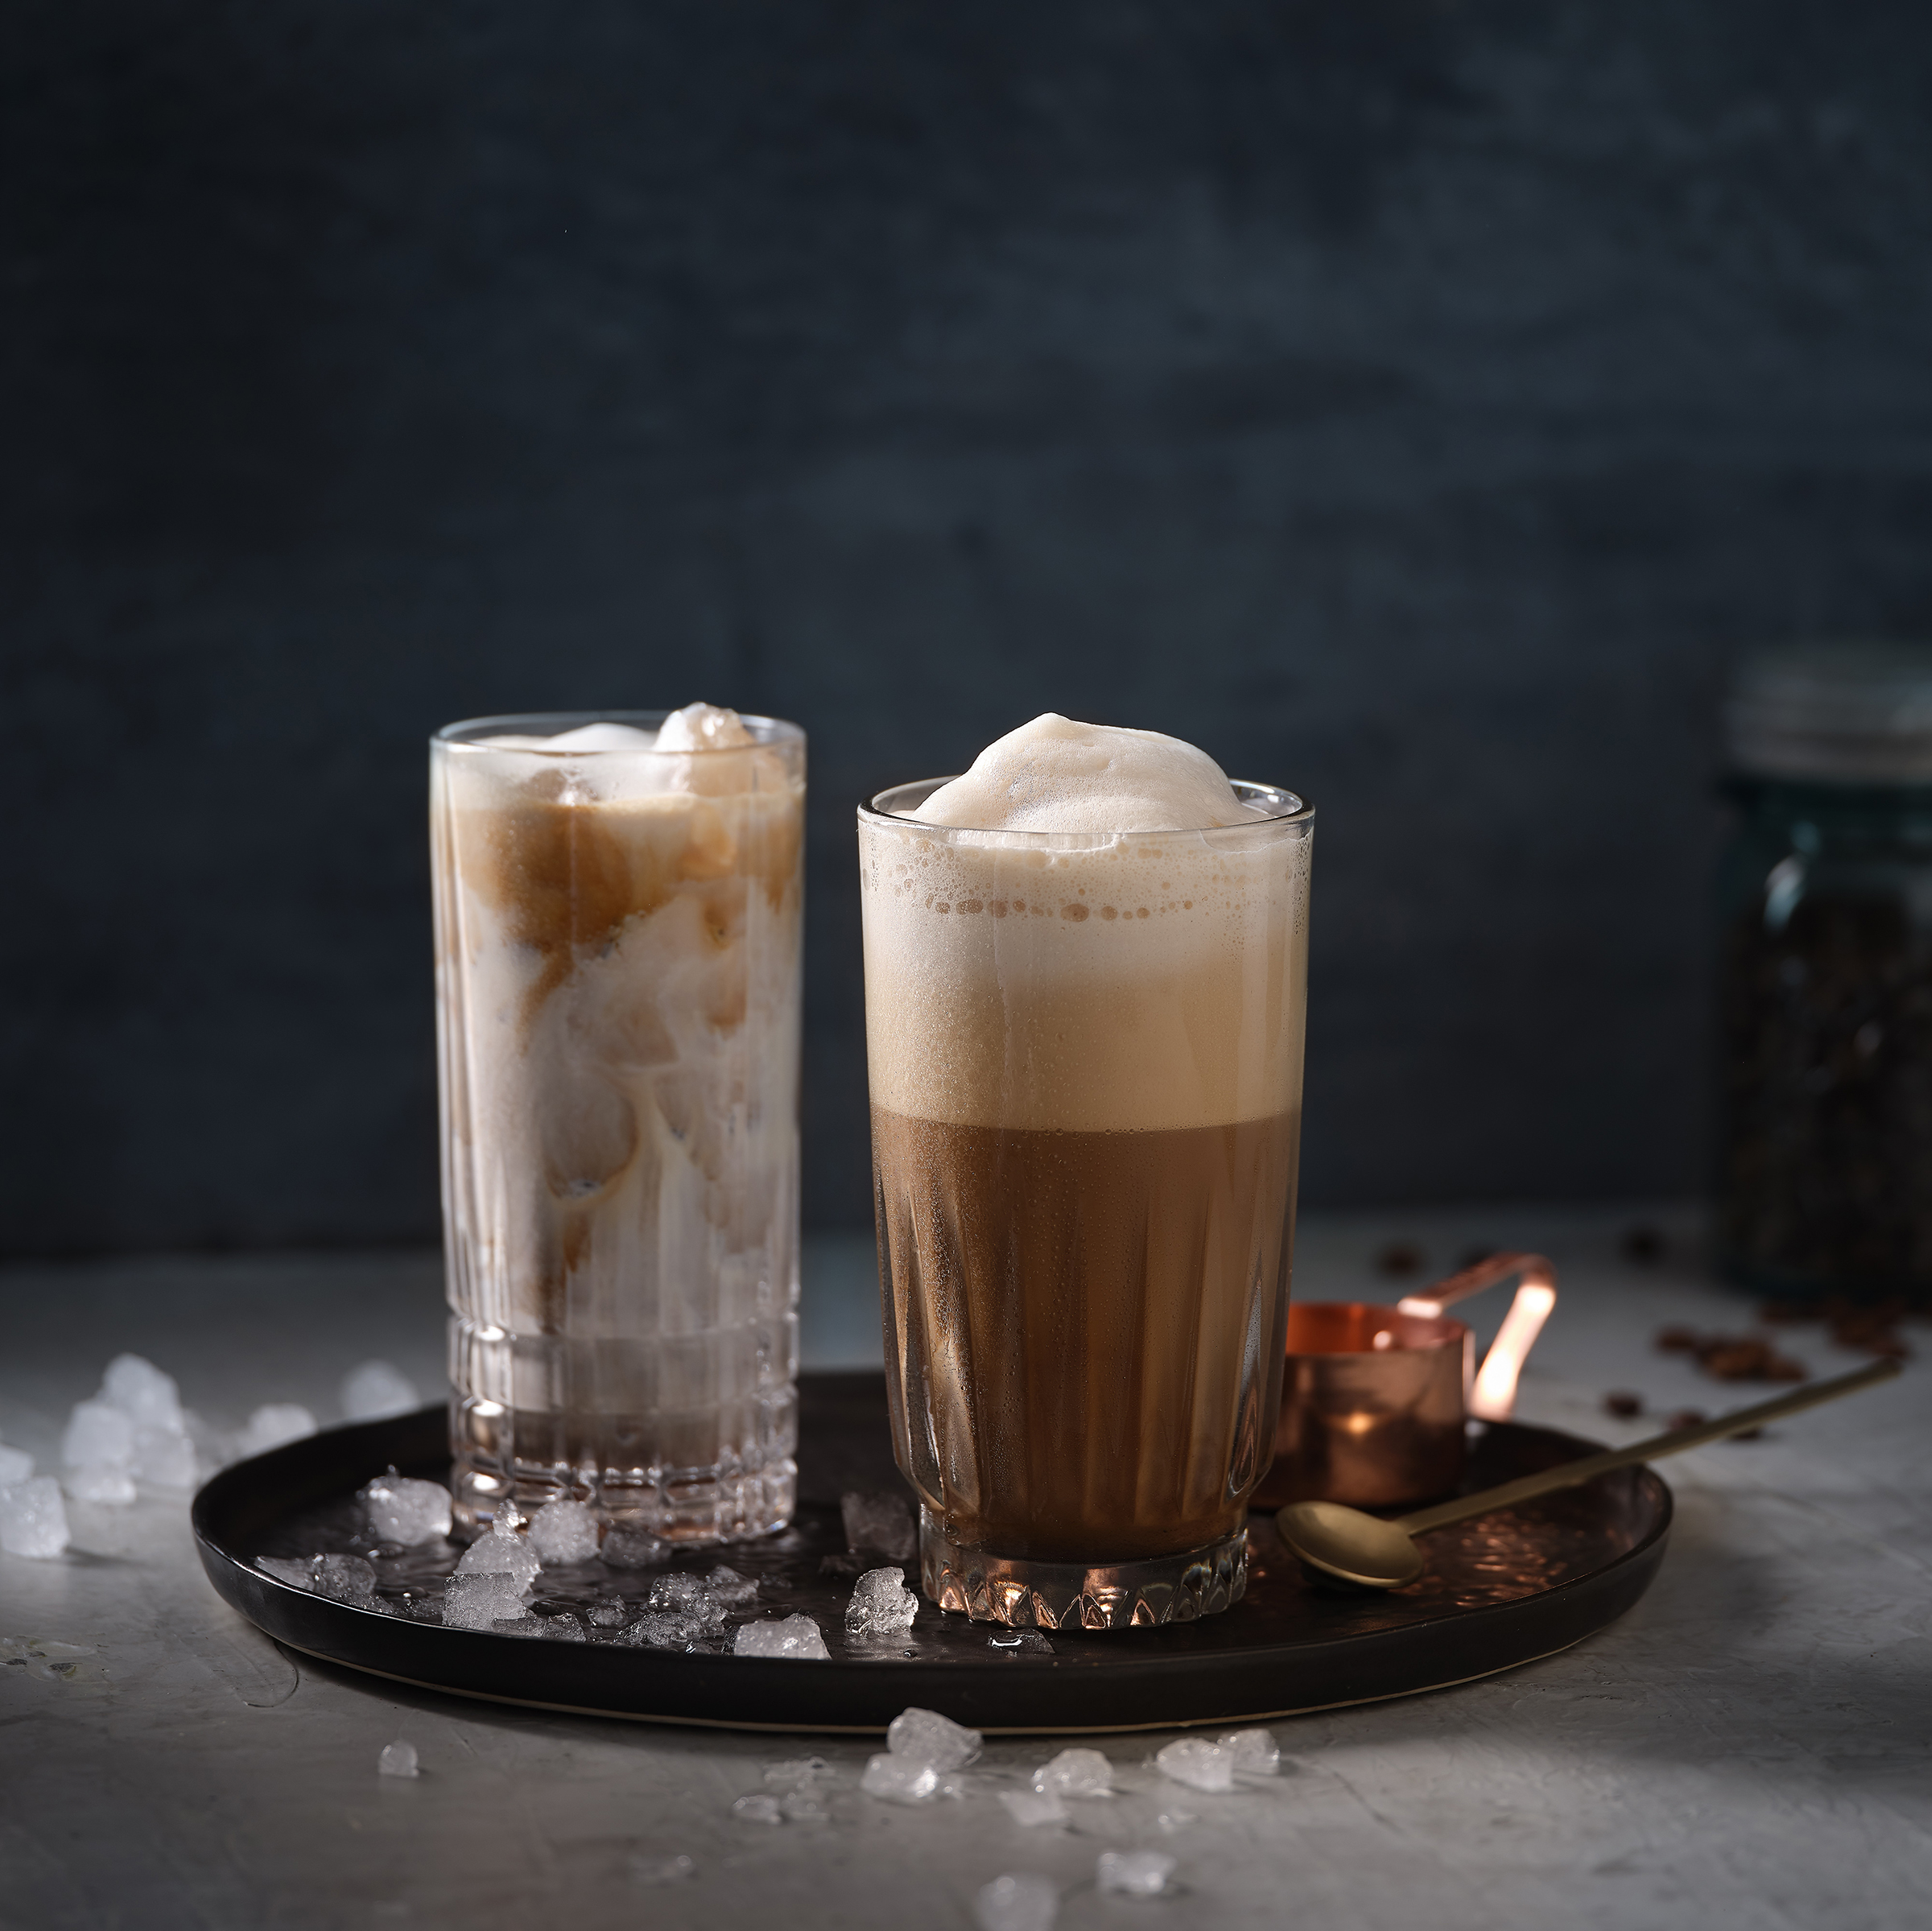 Iced Cafe und Eiskaffee sthen auf einem Tablett in dunklem Umfeld. Am Boden liegt Crushed Ice.